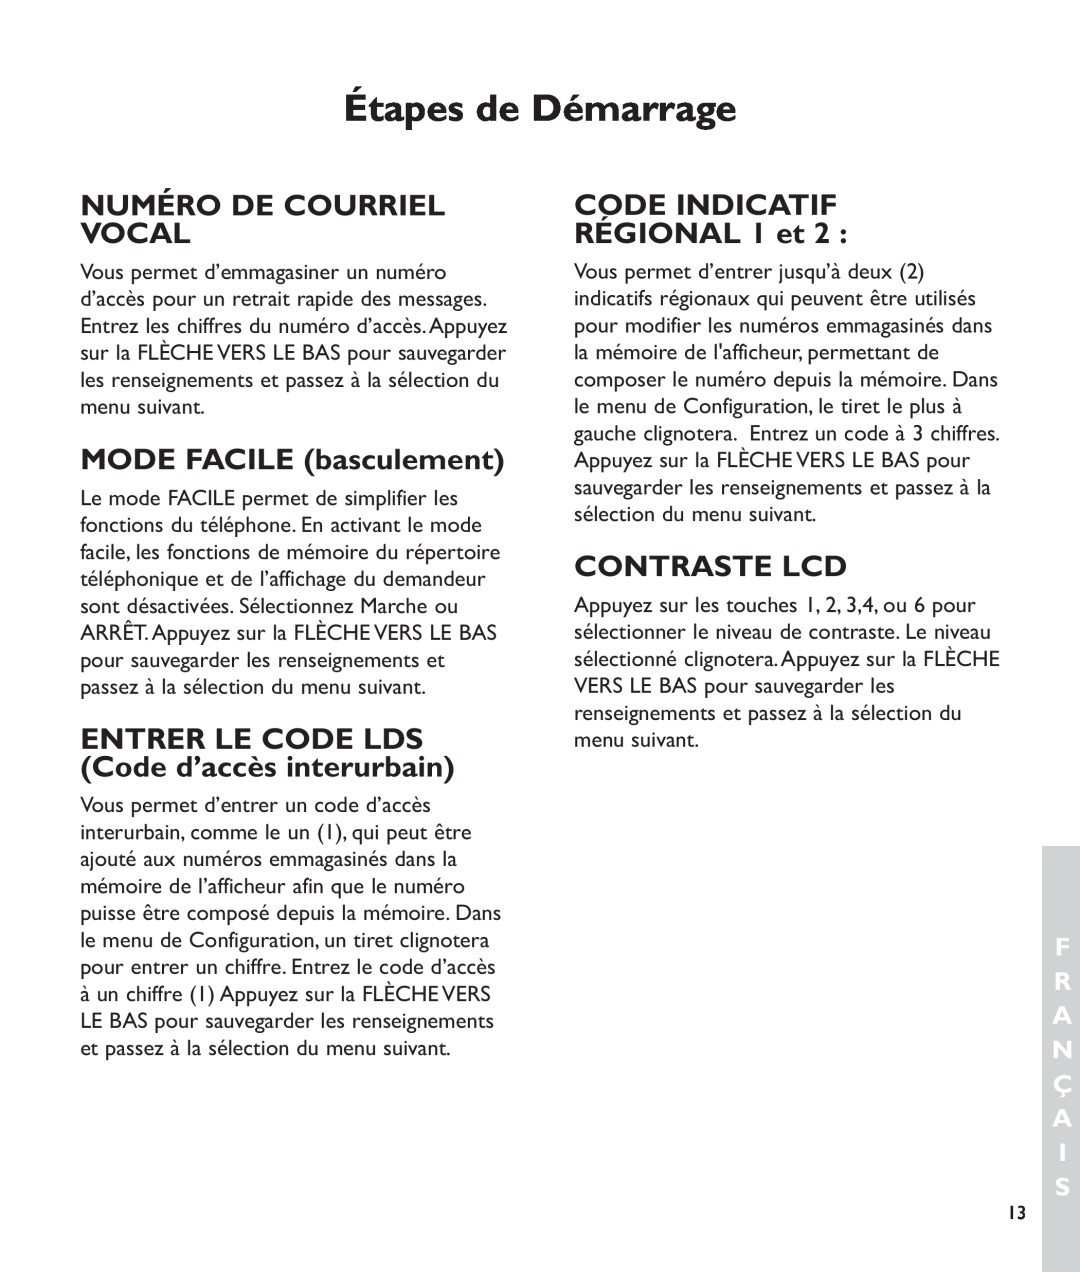 Clarity c2210 manual Numéro De Courriel Vocal, MODE FACILE basculement, CODE INDICATIF RÉGIONAL 1 et, Contraste Lcd 